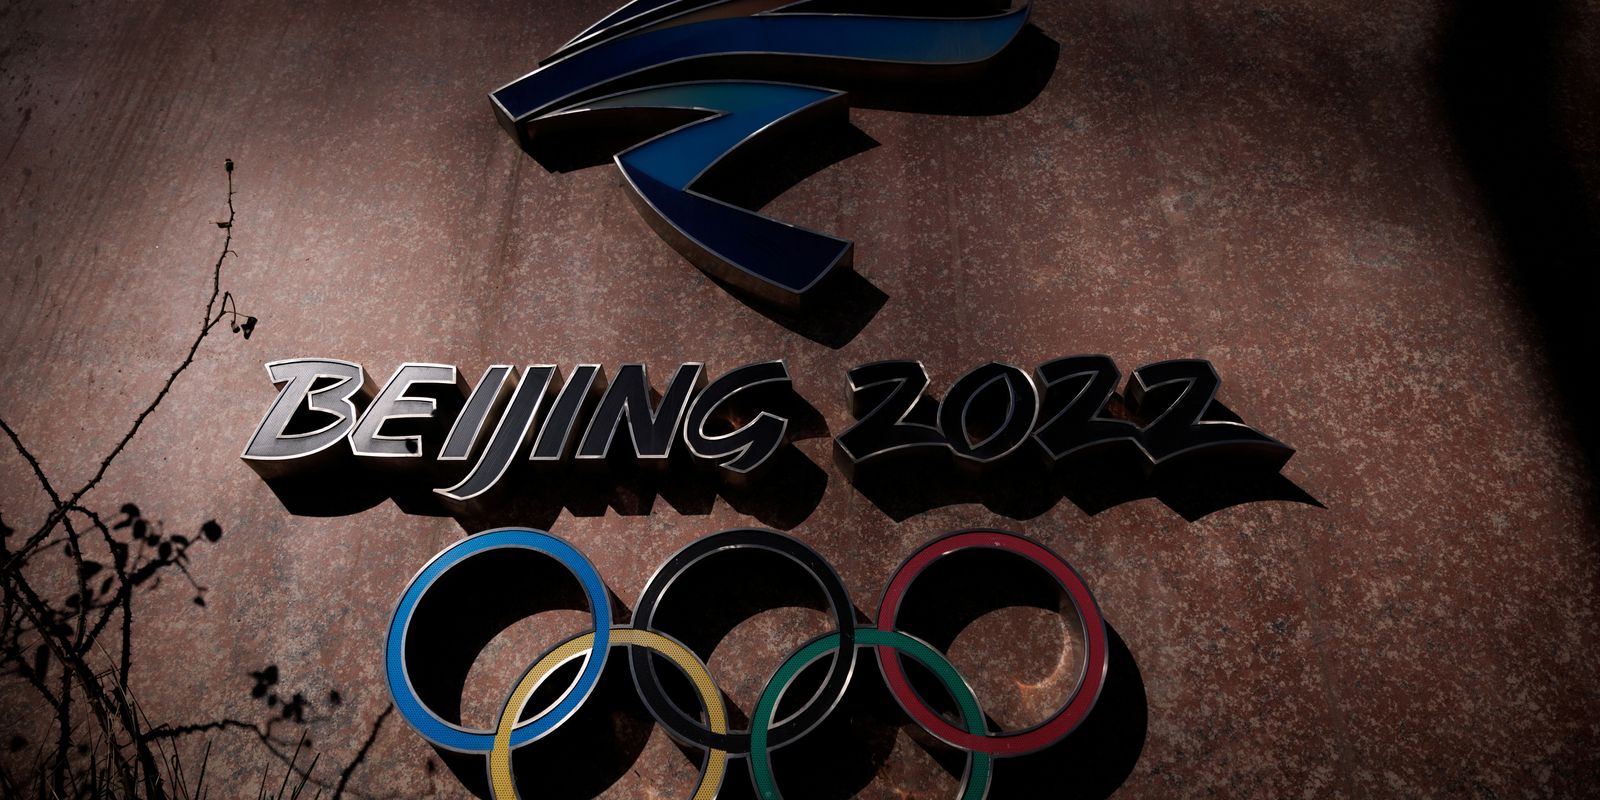 Logo da Olimpíada de Inverno Pequim 2022 - símbolo, marca - Beijing